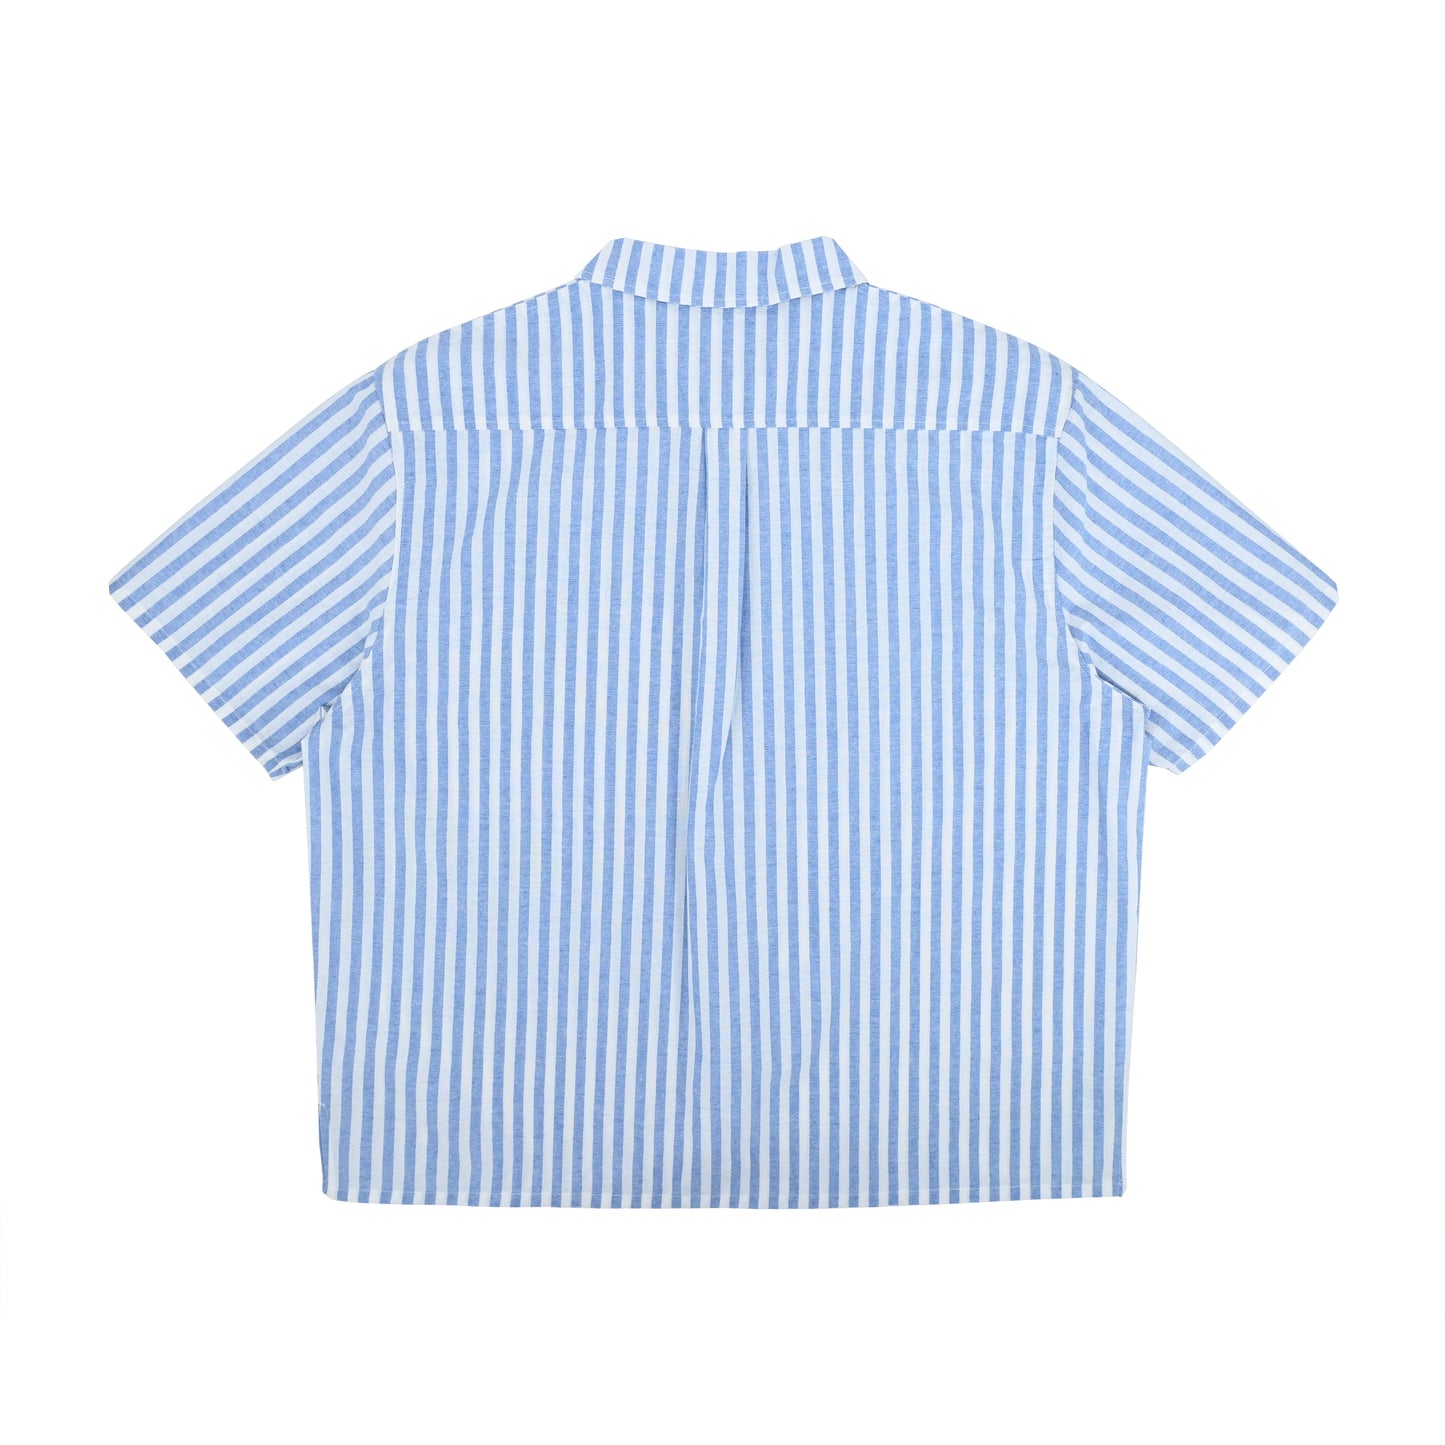 親子裝 - 成人深藍色橫間印花短袖恤衫